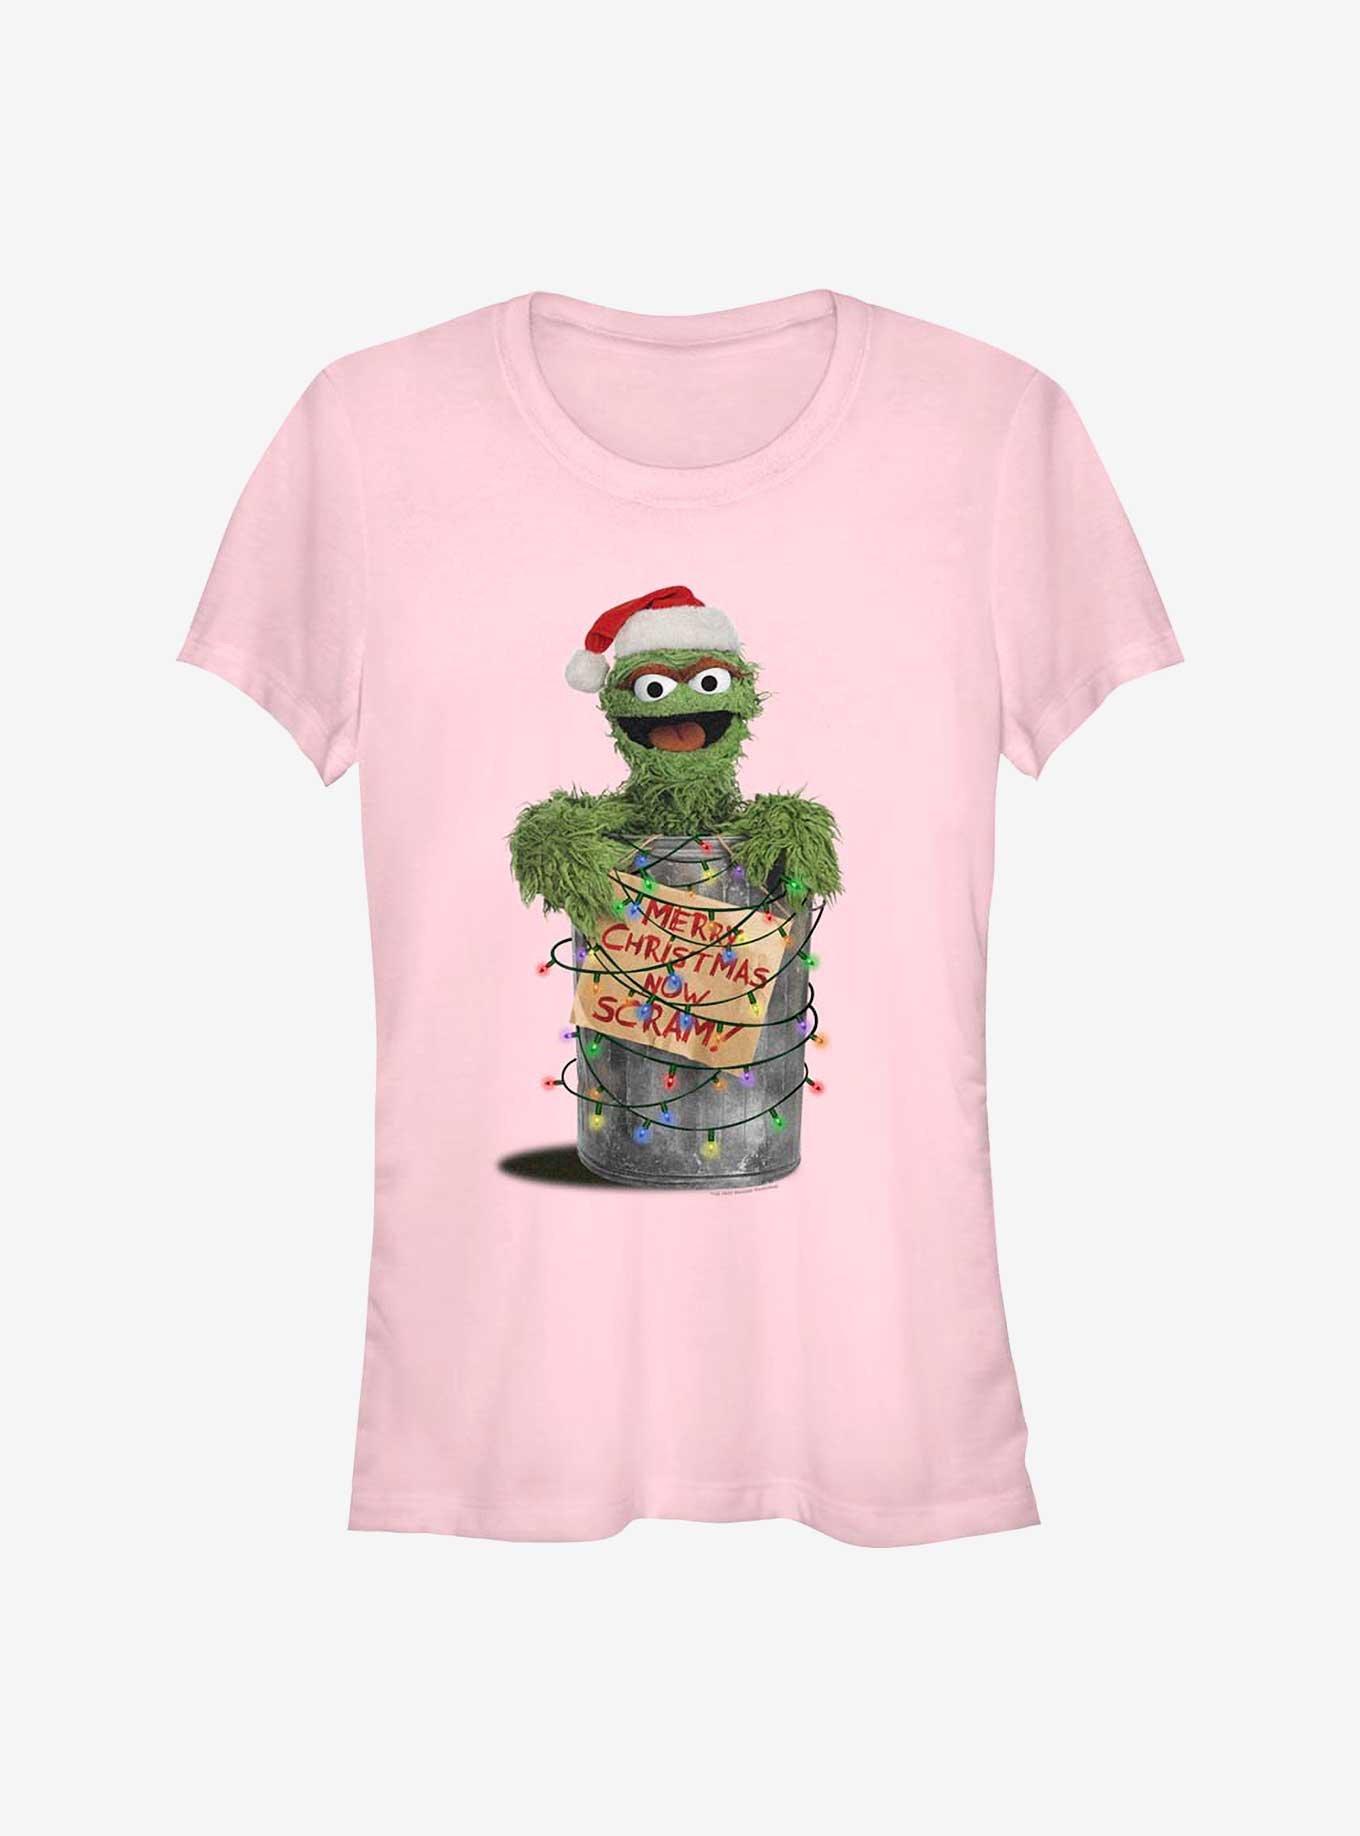 Sesame Street Oscar the Grouch Merry Christmas Now Scram Girls T-Shirt, LIGHT PINK, hi-res